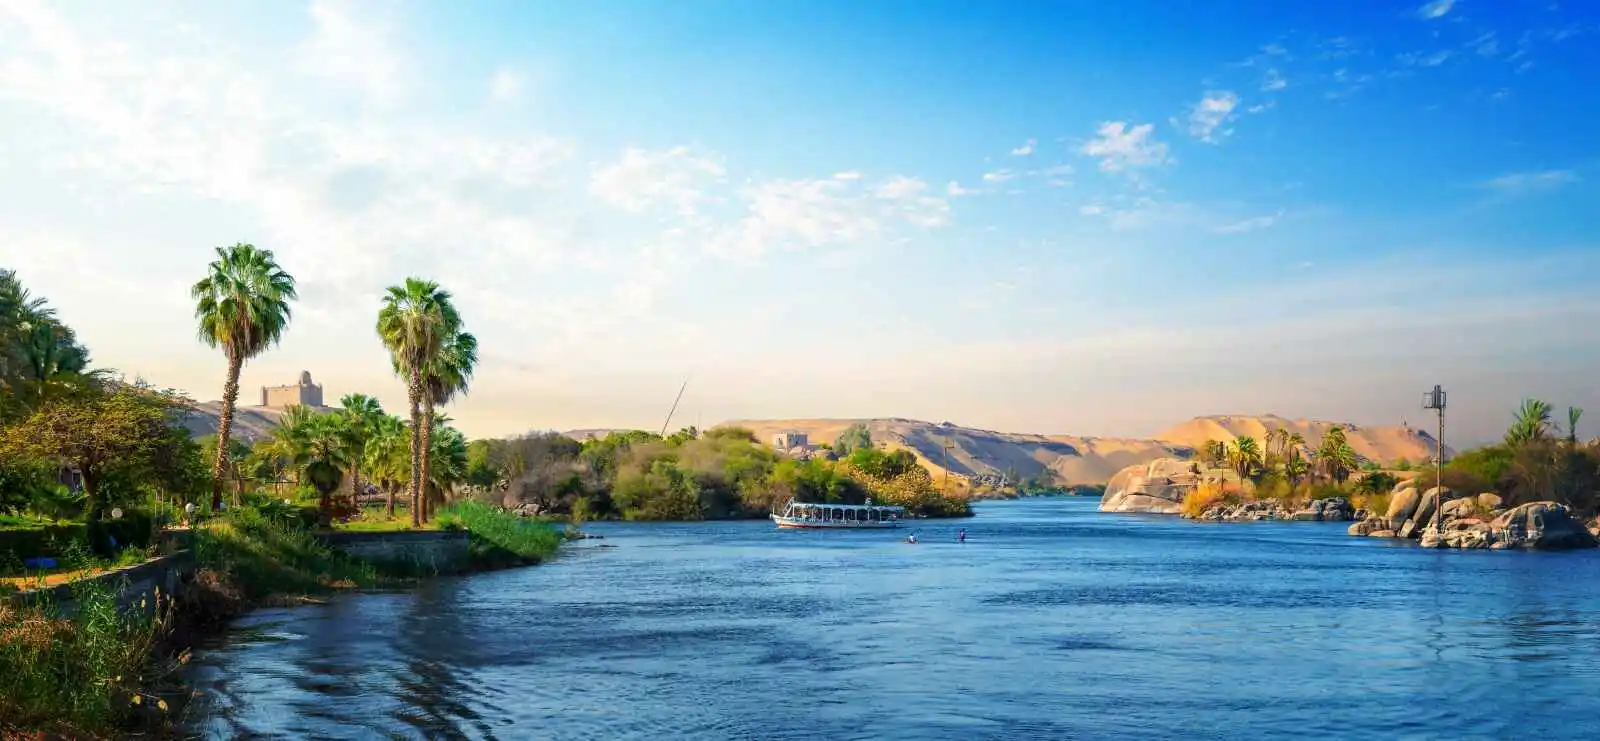 Égypte : Le Nil en dahabeya